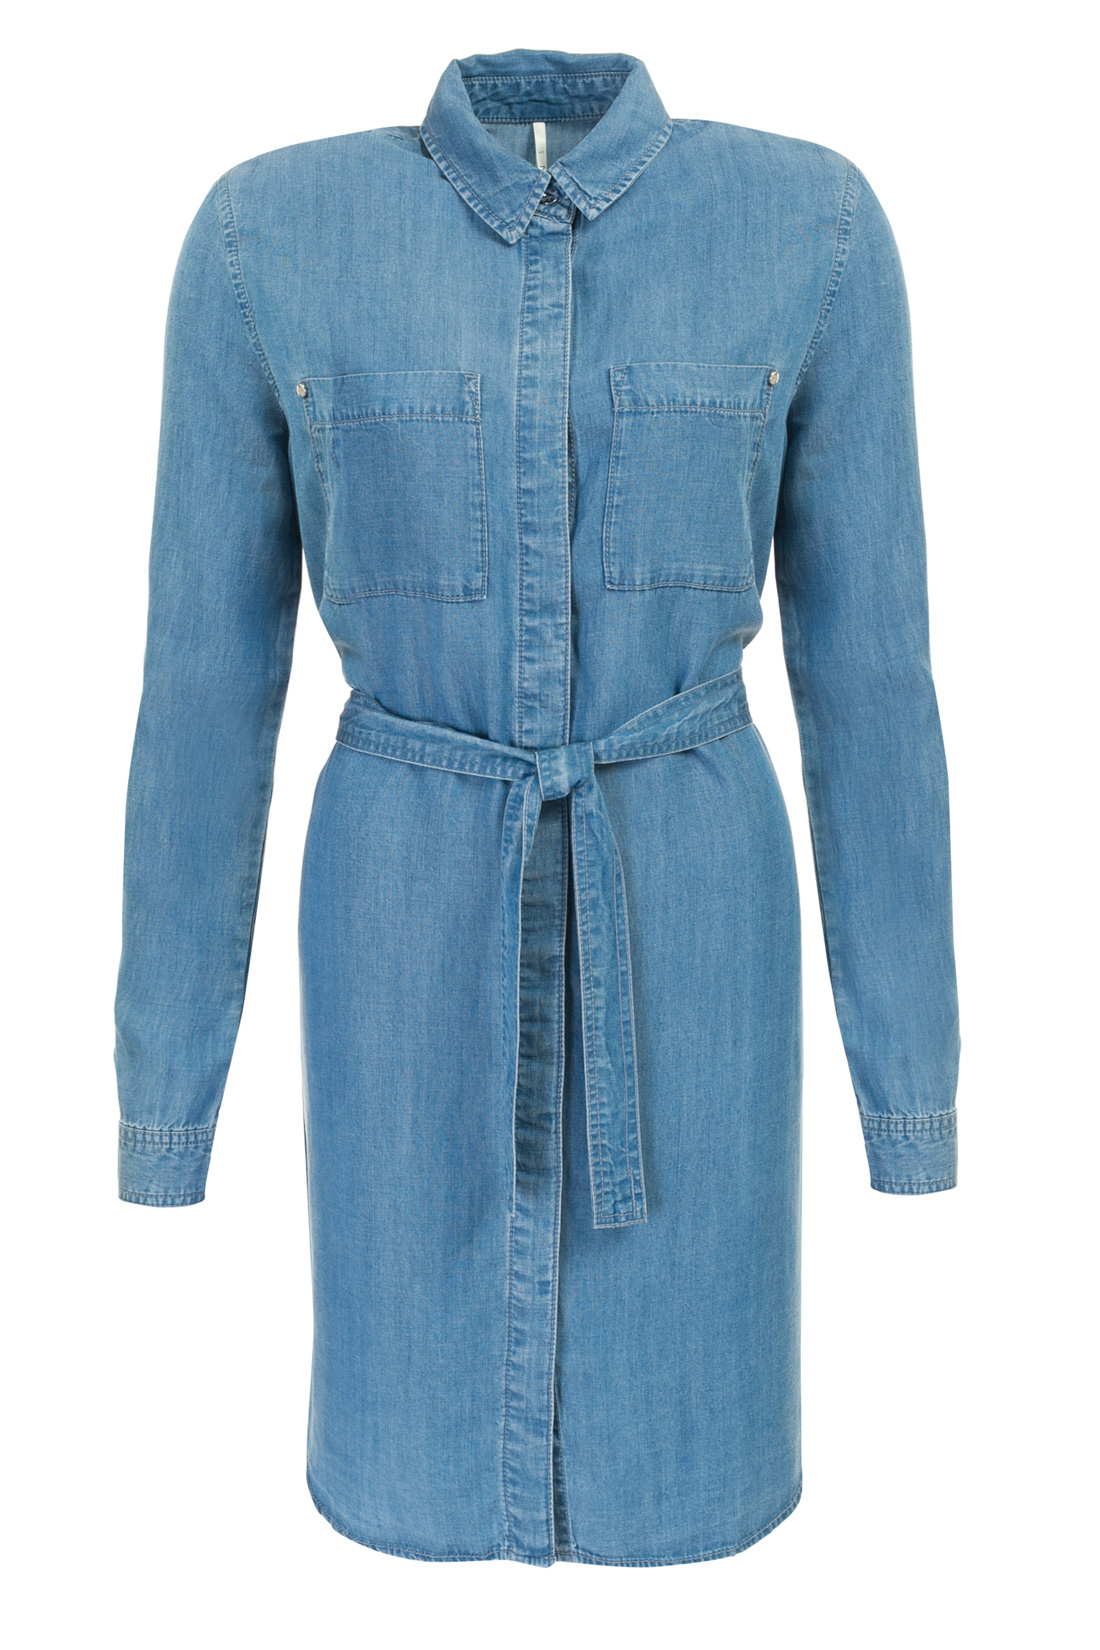 Платье-рубашка из денима (арт. baon B457088), размер L, цвет blue denim#голубой Платье-рубашка из денима (арт. baon B457088) - фото 3